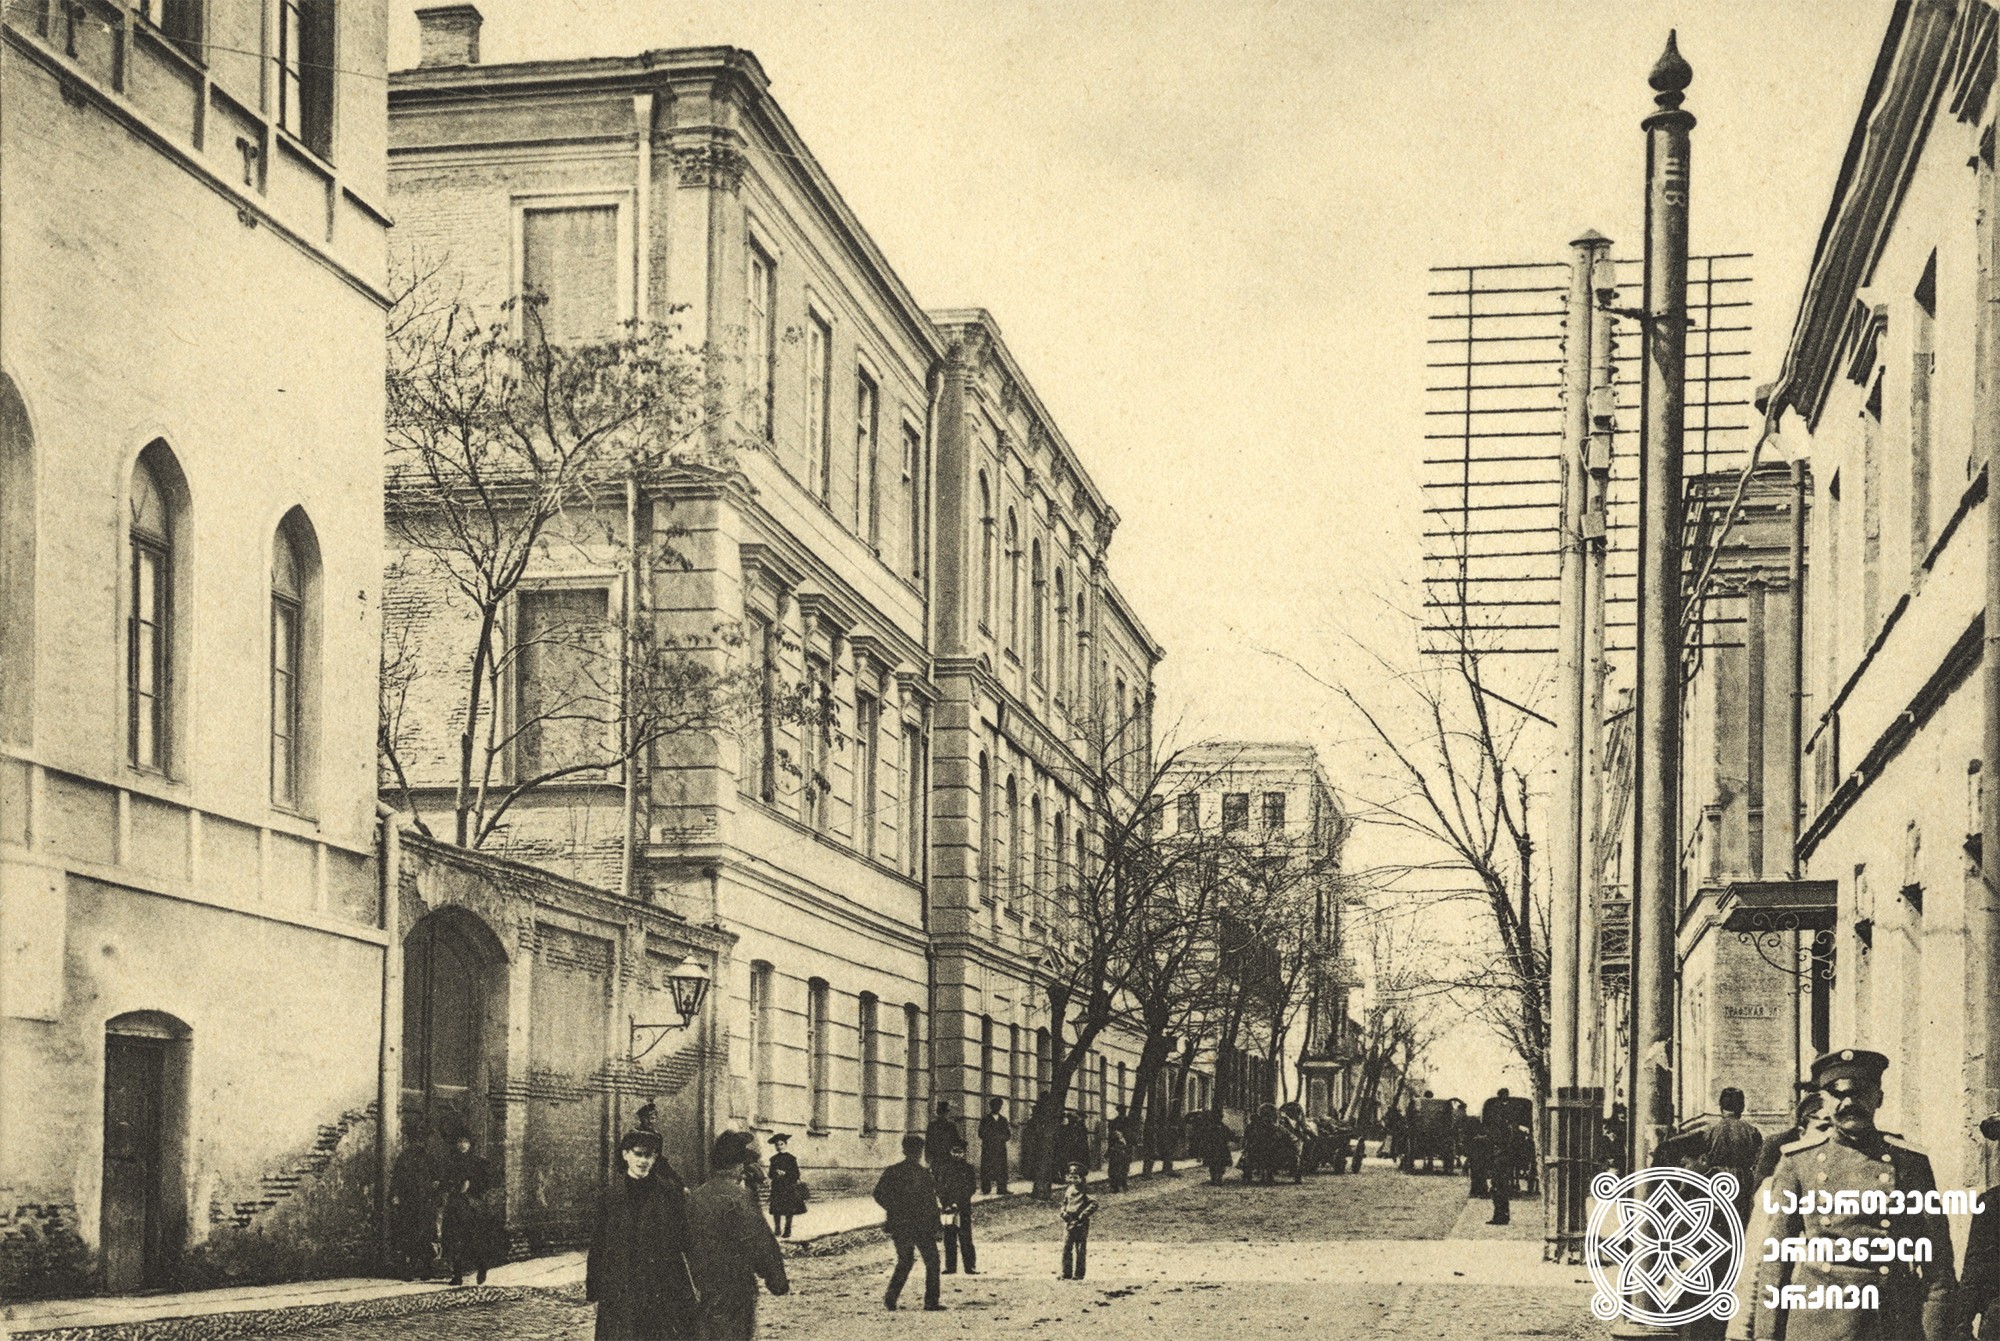 ქალთა პირველი გიმნაზია ატამანის (დღევანდელი ლადო გუდიაშვილის) ქუჩაზე
სასწავლებლის მშენებლობა დასრულდა 1874 წლის ოქტომბერში. <br>
არქიტექტორი ალბერტ ზალცმანი. <br>
ფოტო დიმიტრი ერმაკოვის კოლექციიდან [1890-1910].